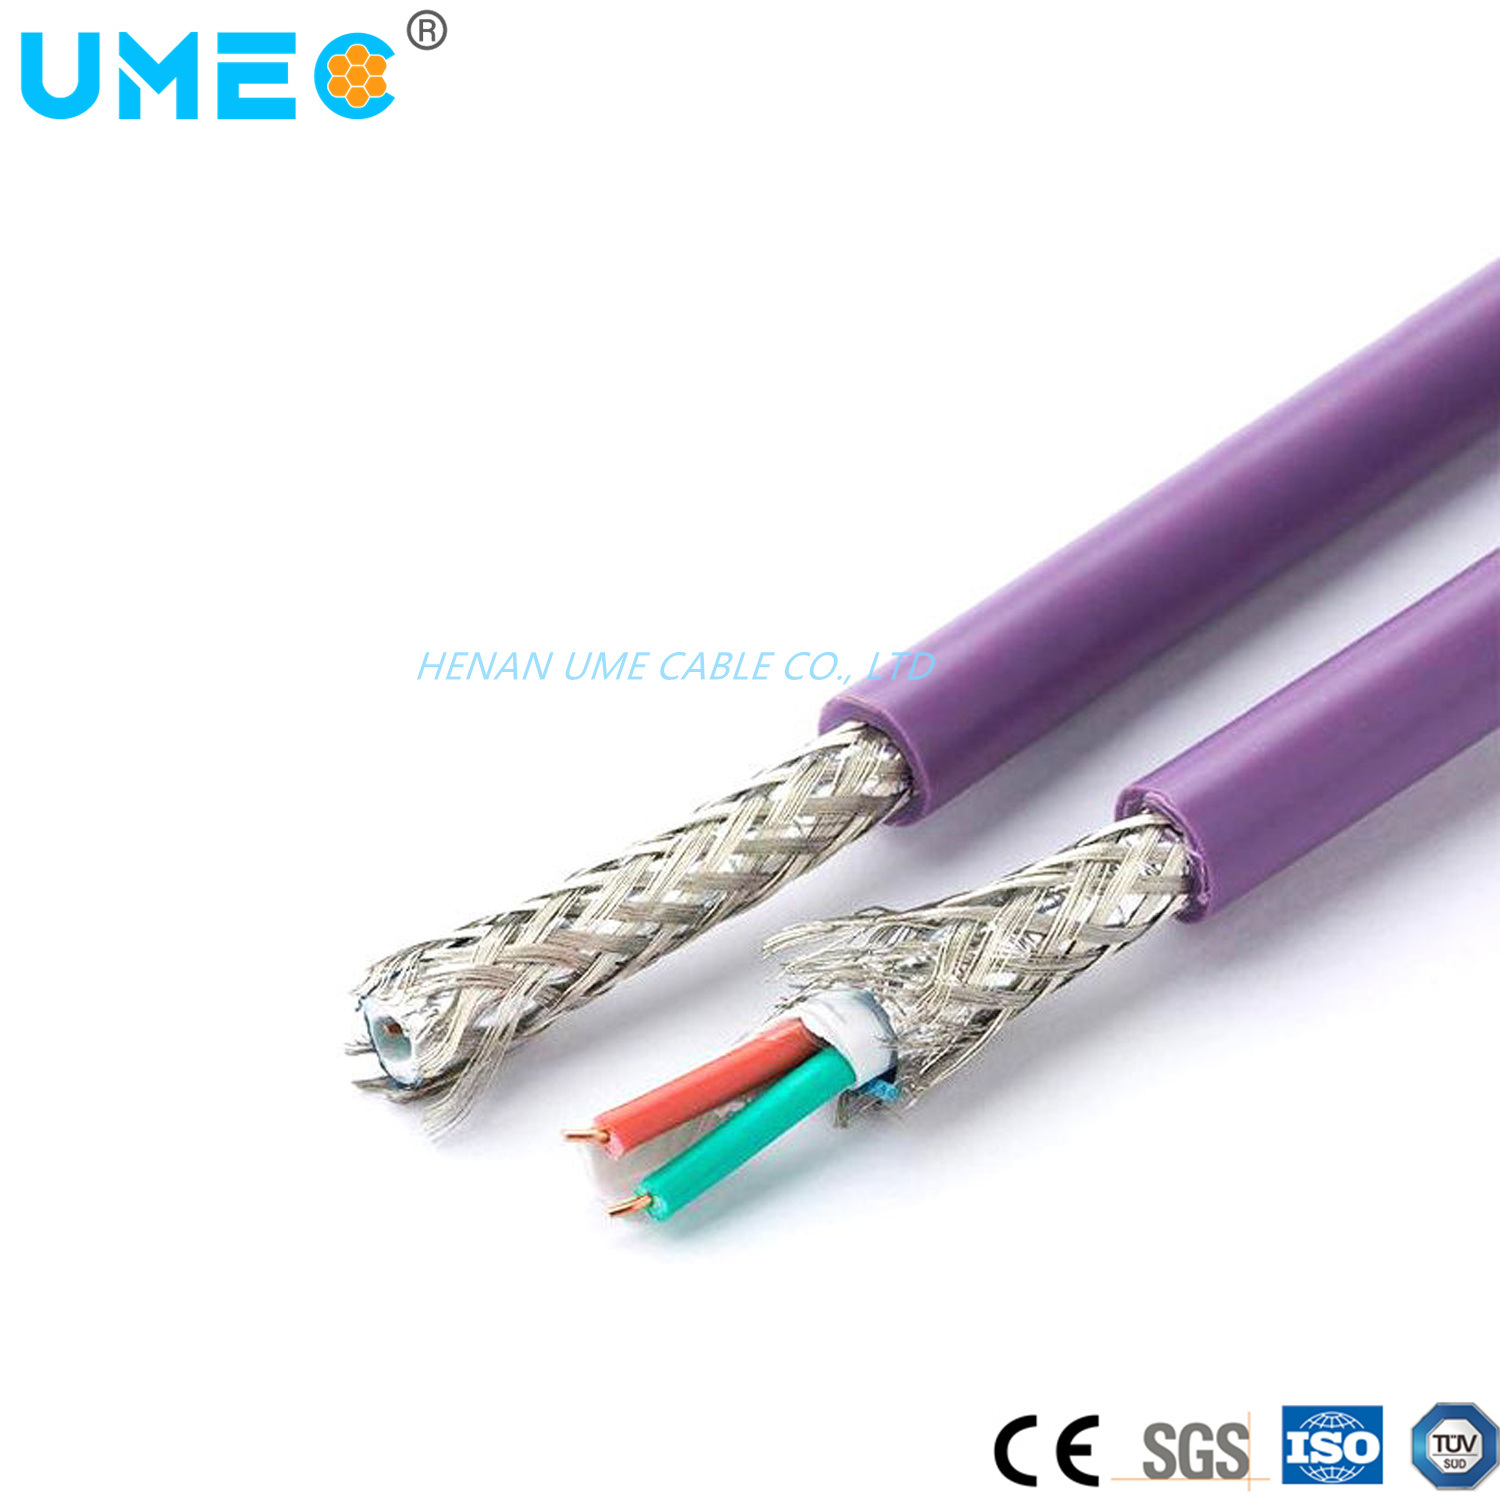 
                Kupferlitzenkabel für flexible Feldkommunikation 6 x v1830-0eh10 Kabel
            